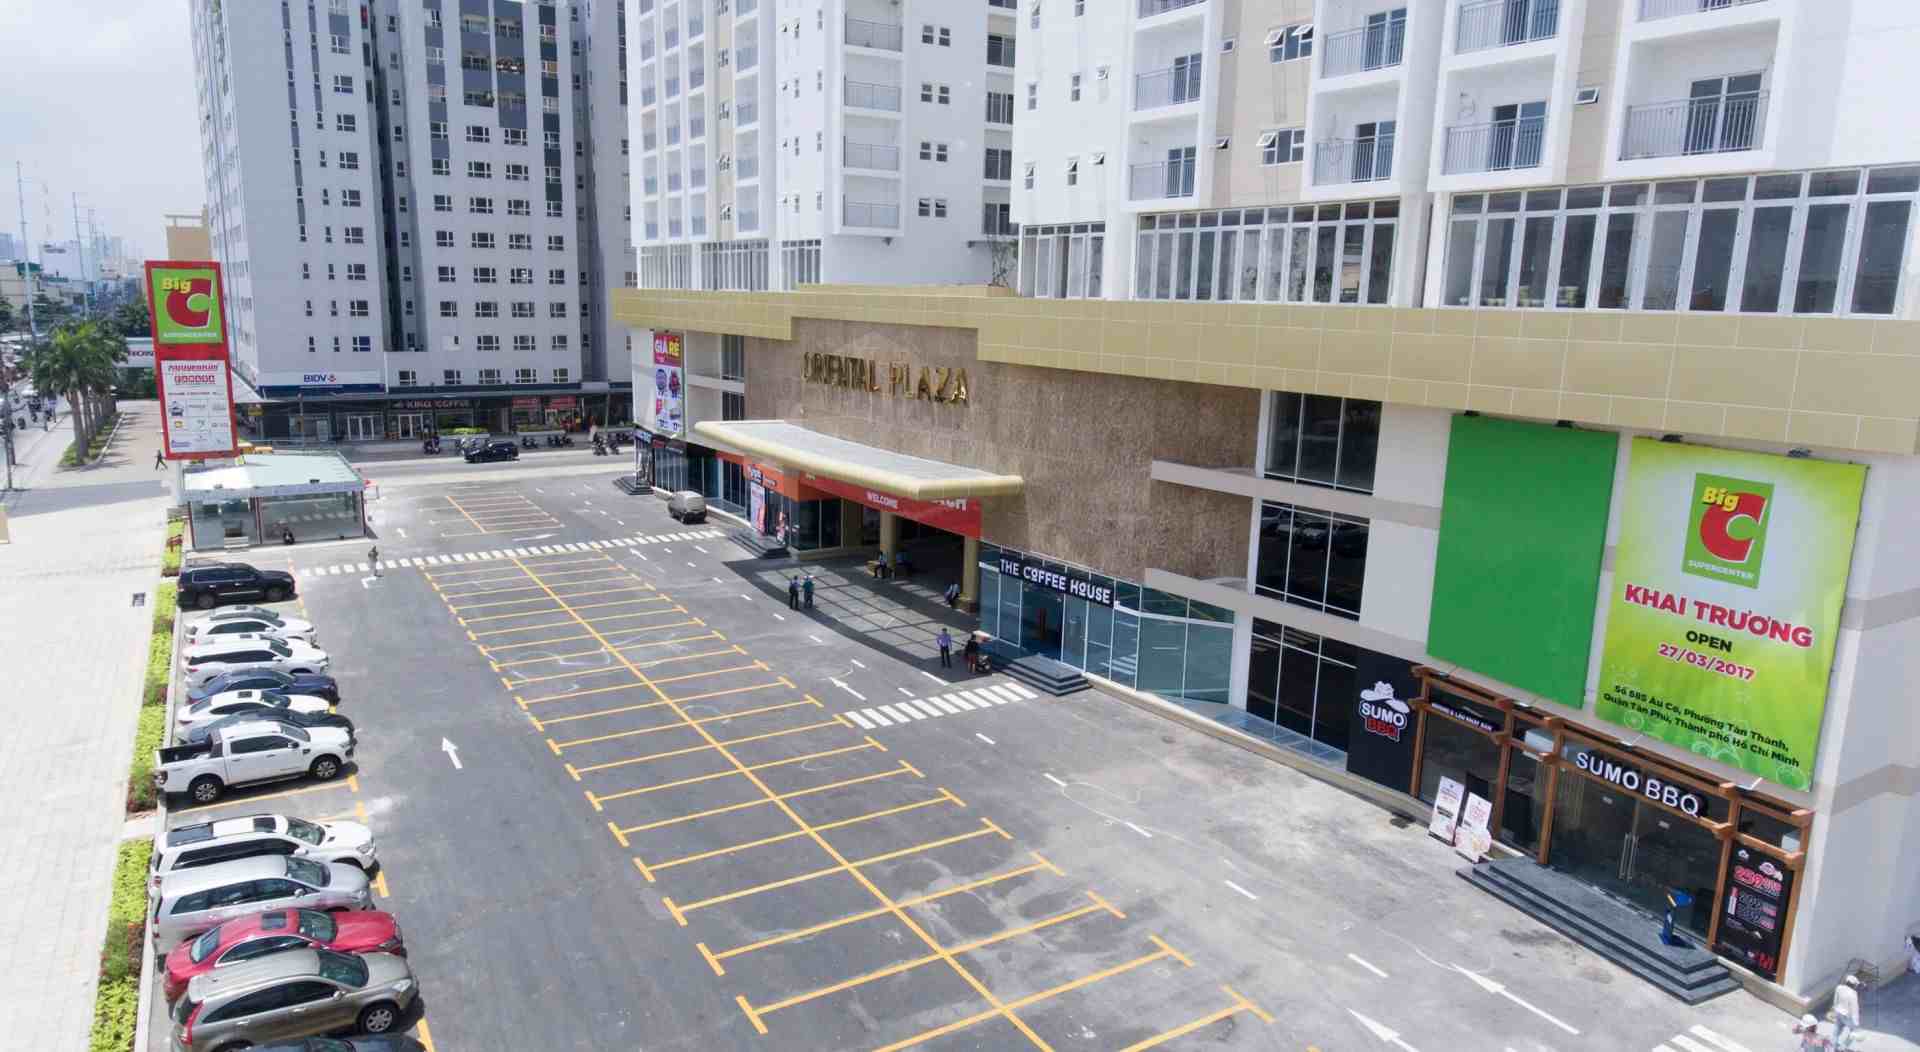 bãi đỗ xe trung tâm thương mại ở dự án Oriental Plaza